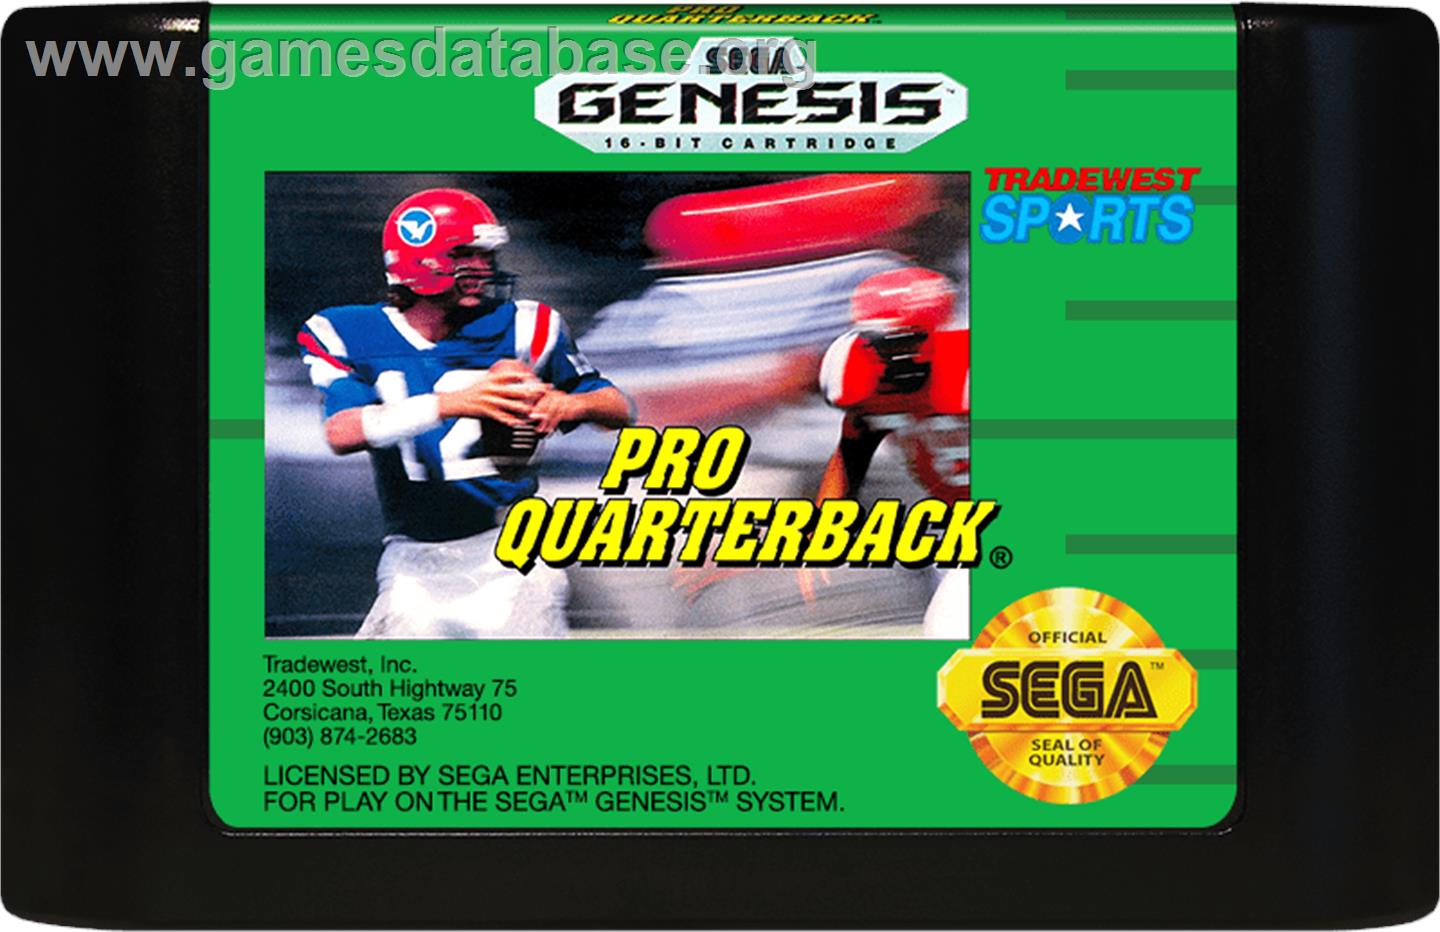 Pro Quarterback - Sega Genesis - Artwork - Cartridge